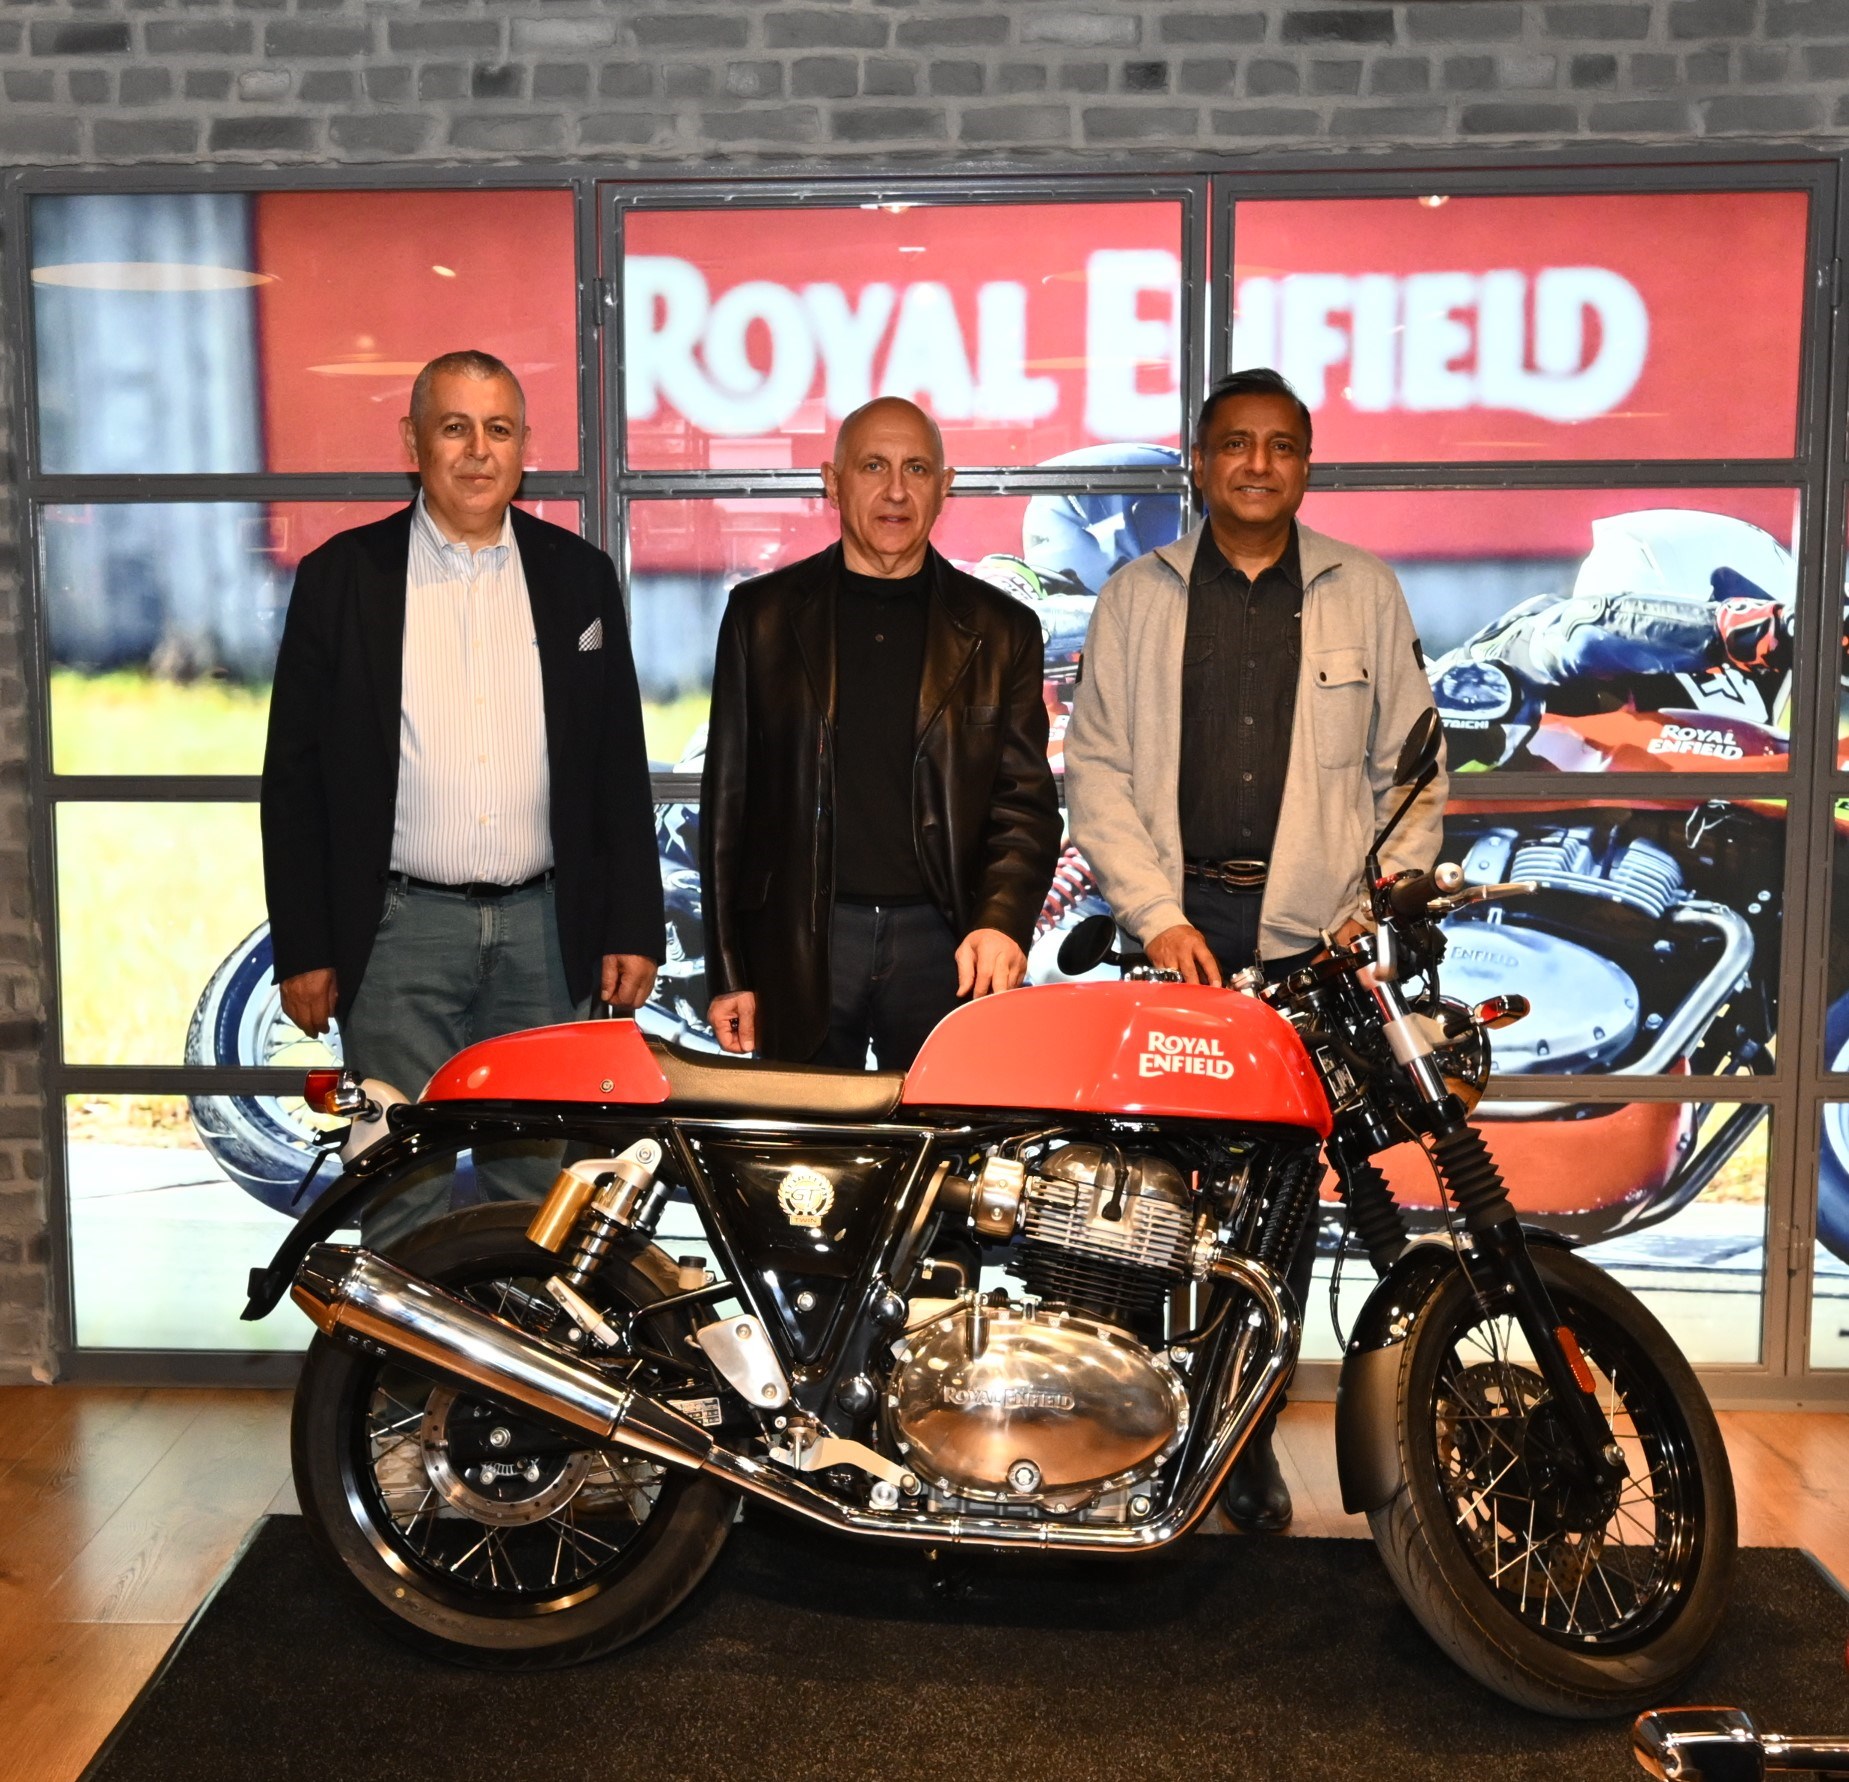 Royal Enfield'ın ikonik motosikletleri K-RIDES ile Türkiye'de